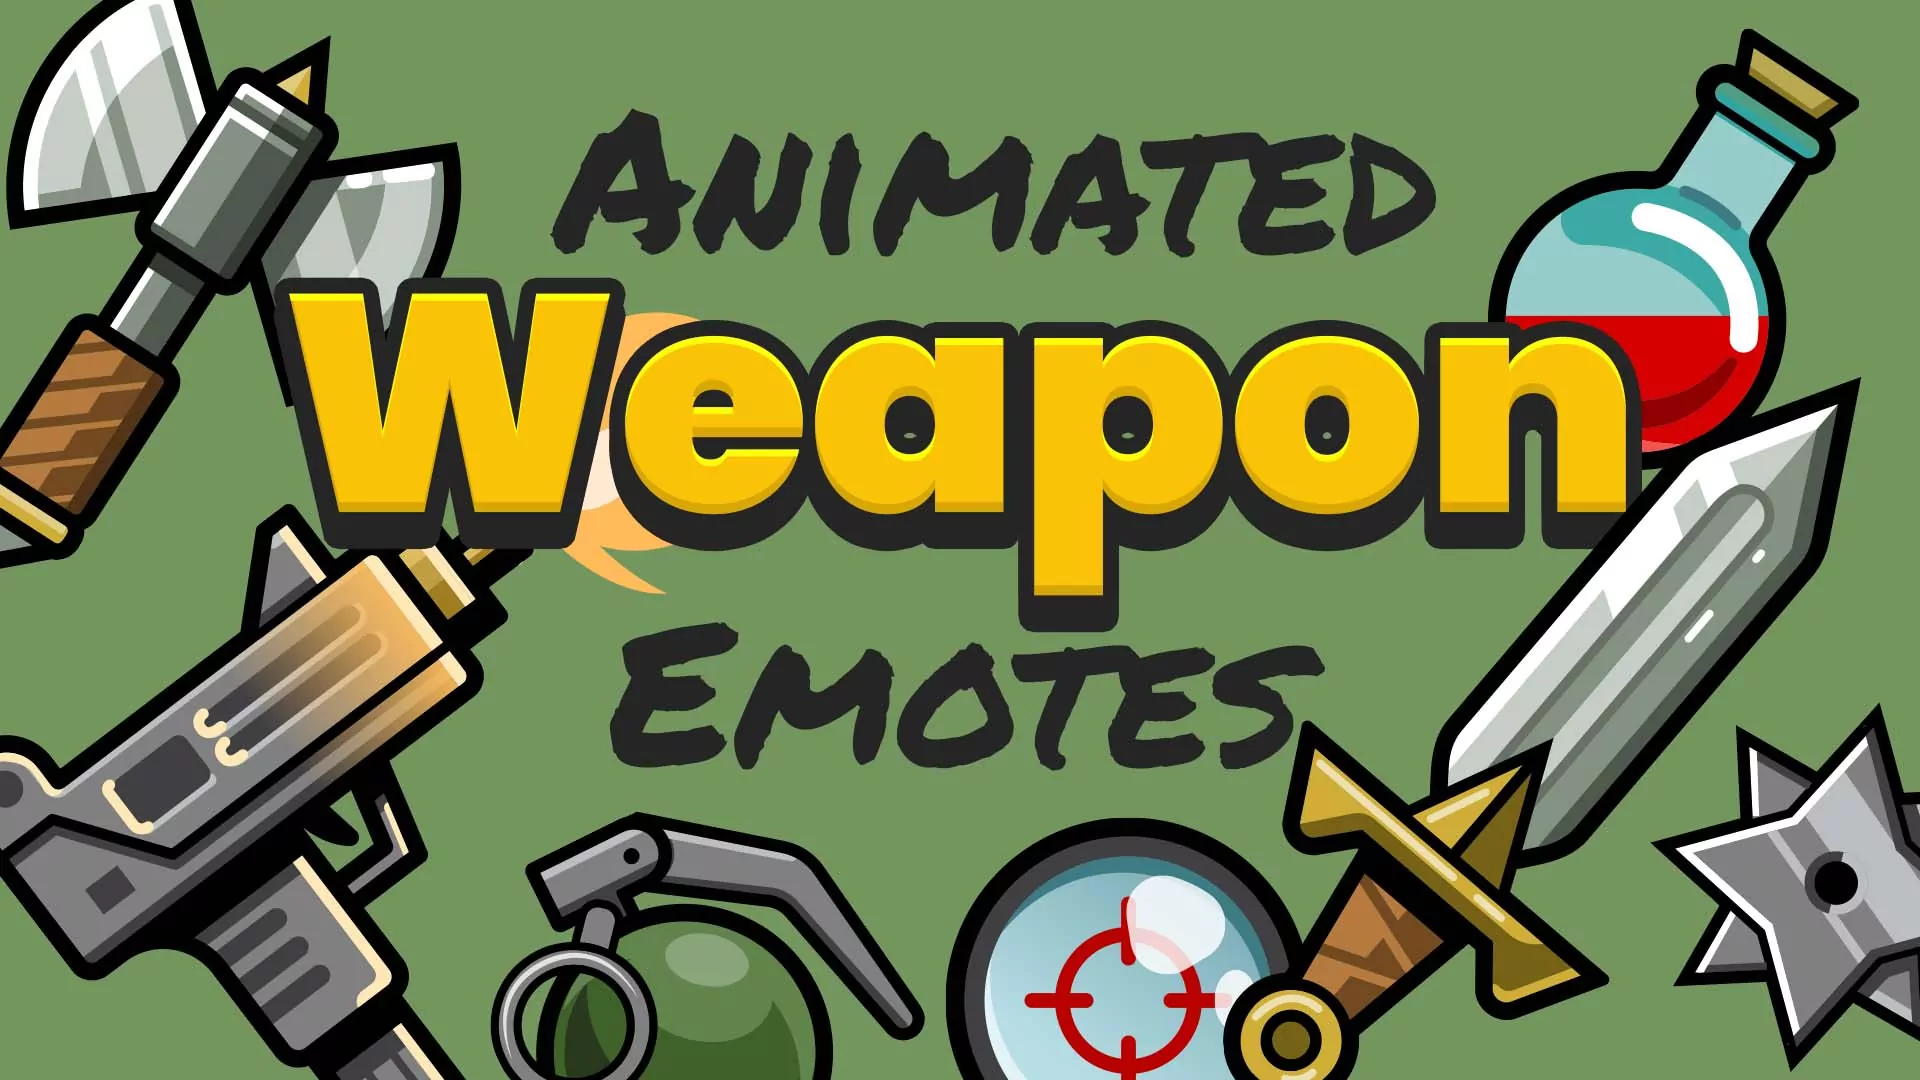 Animated Weapon Emotes - Main Image